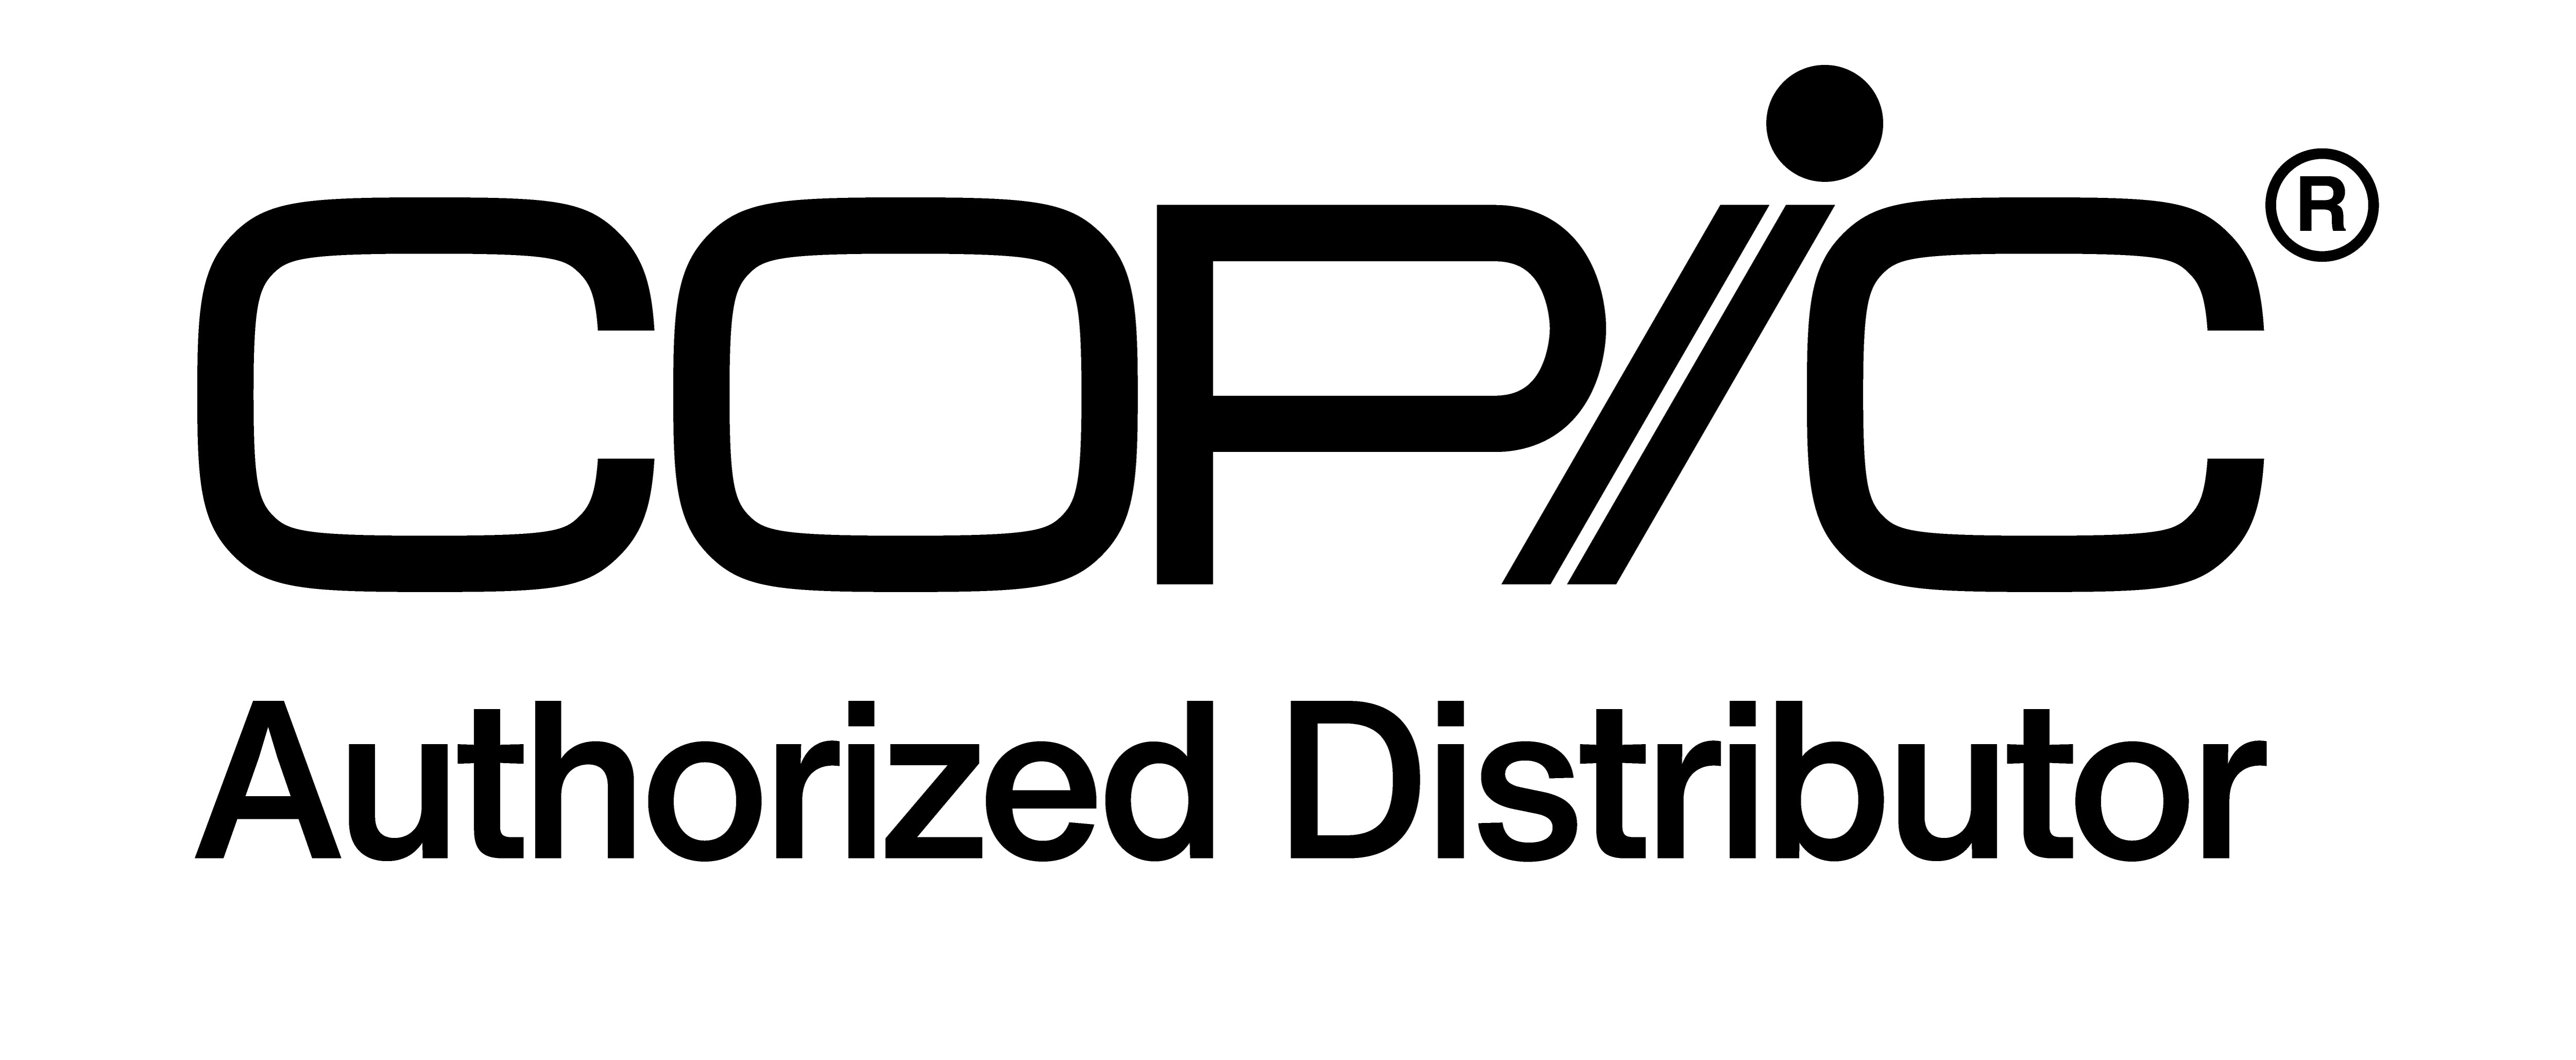 Il logo Copic dei distributori autorizzati